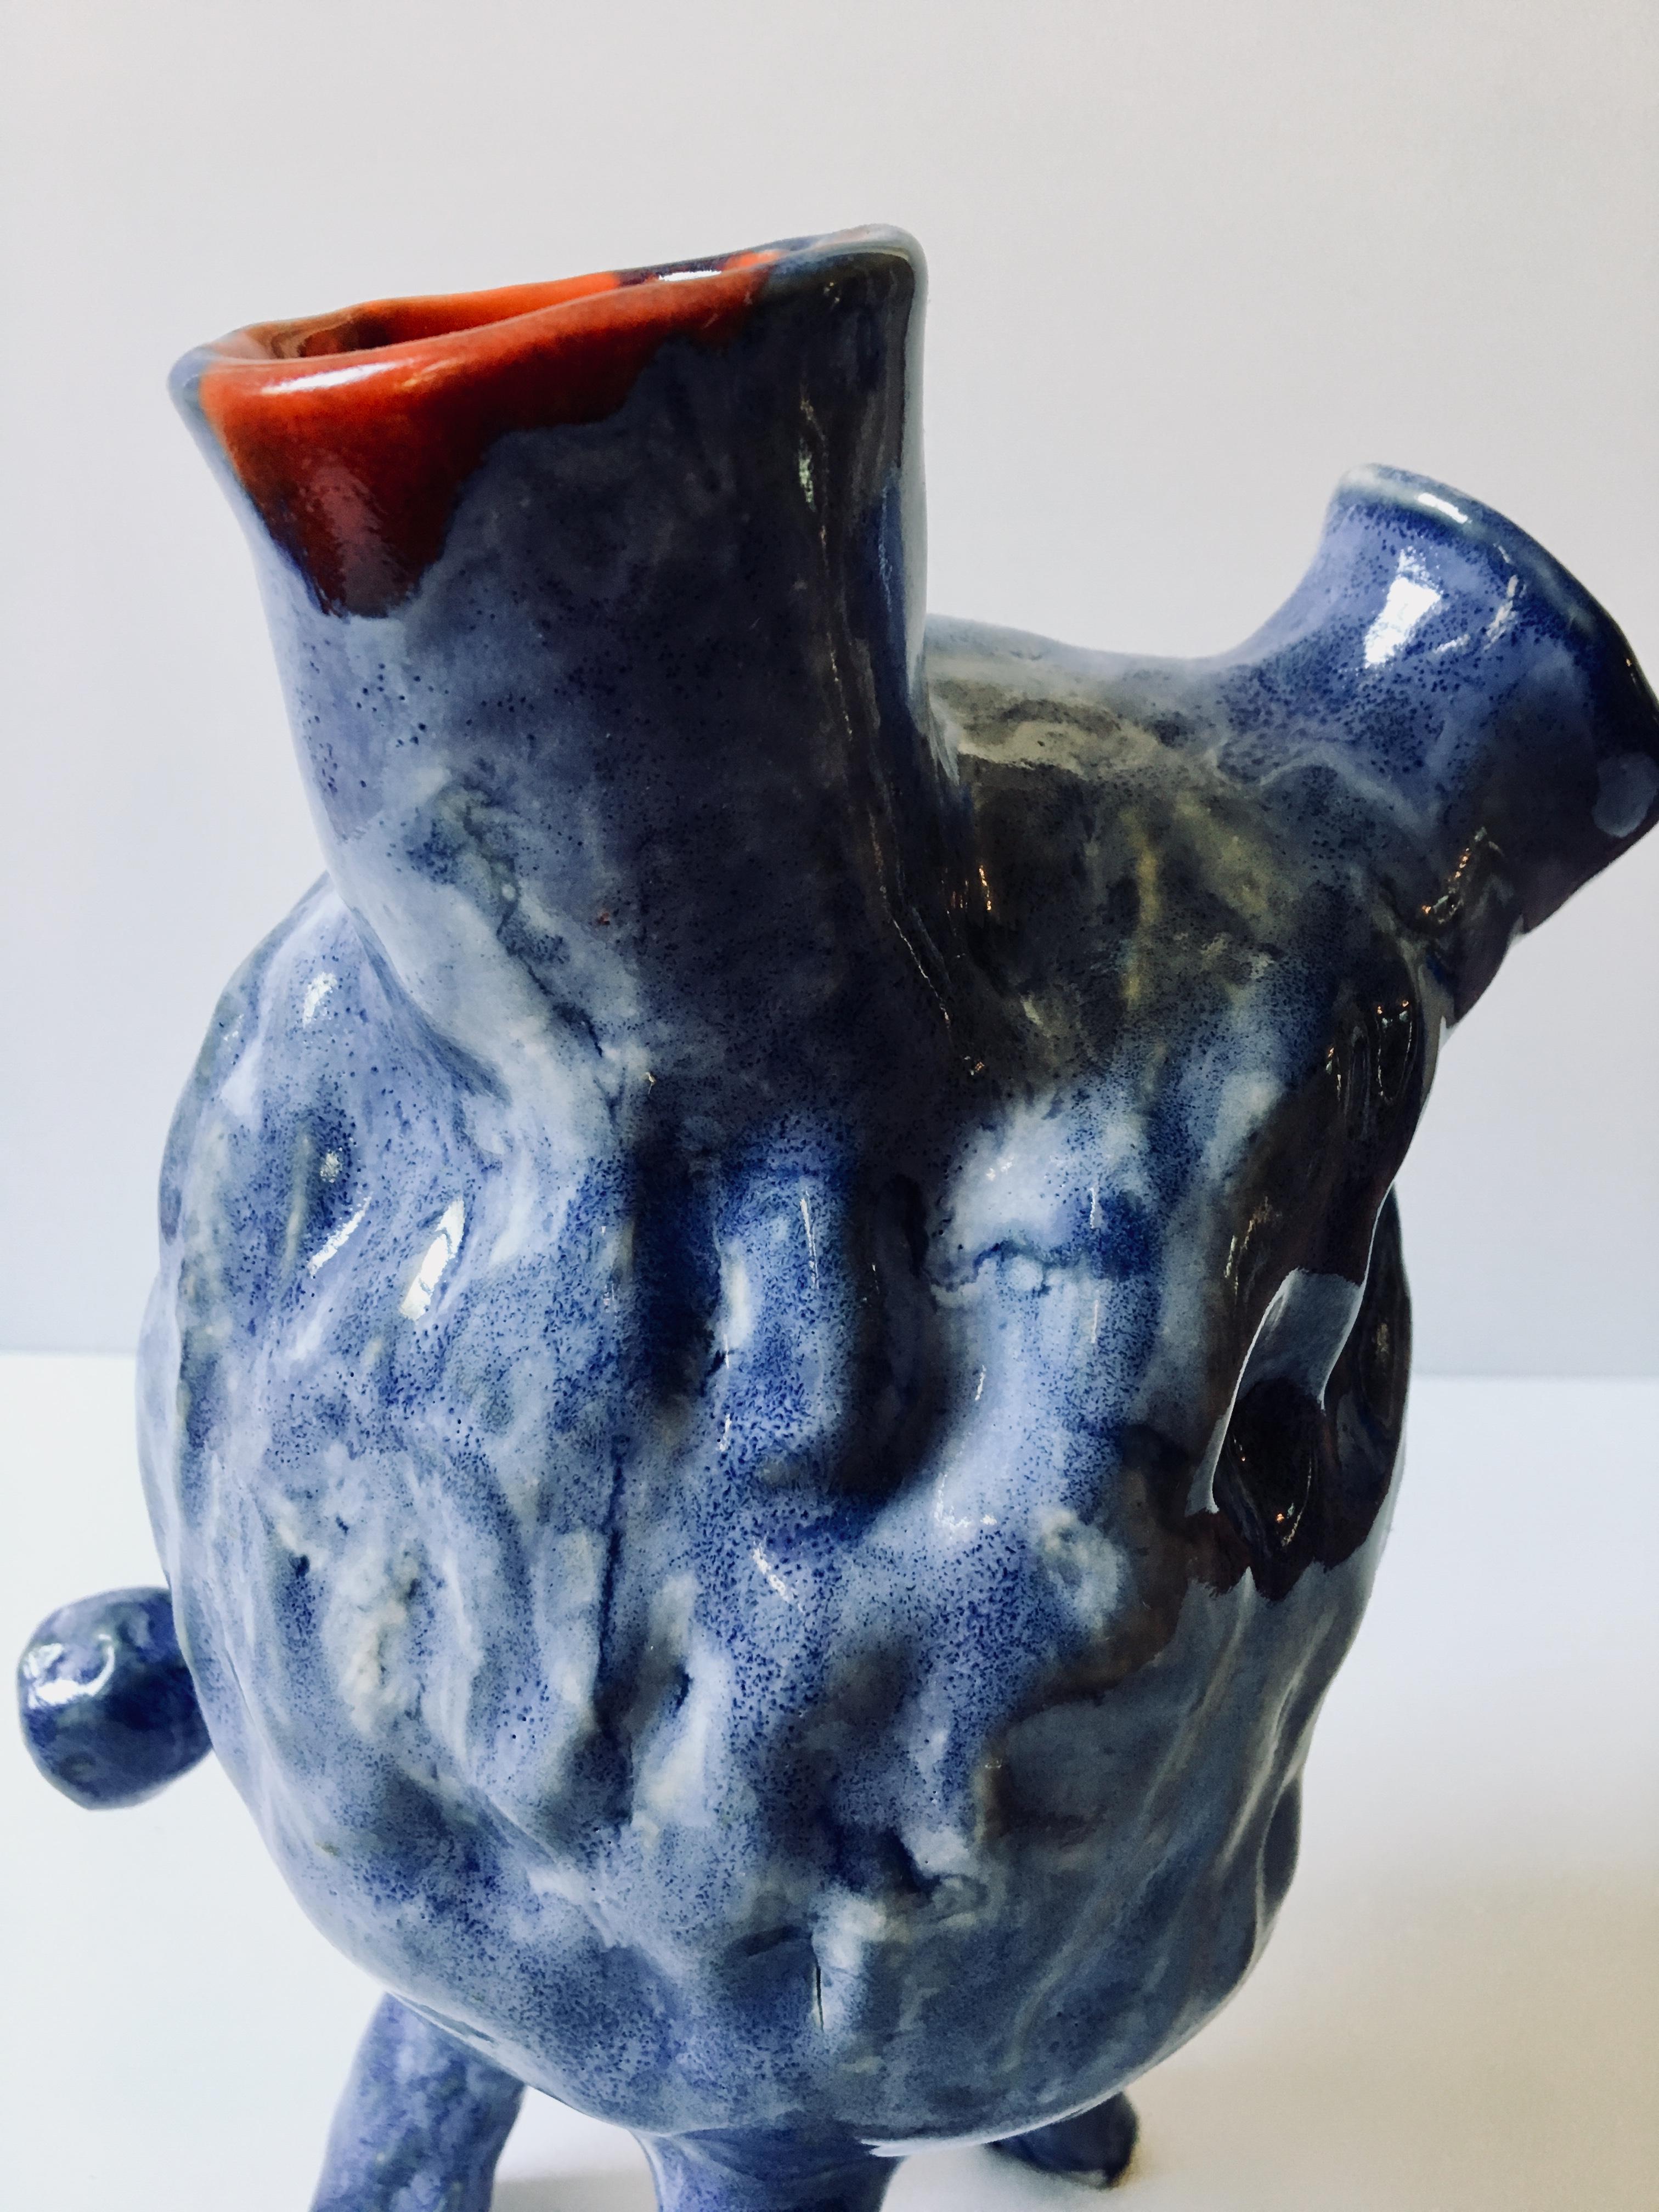 Sculpture ceramic vessel: Creature Medium No 4' 5